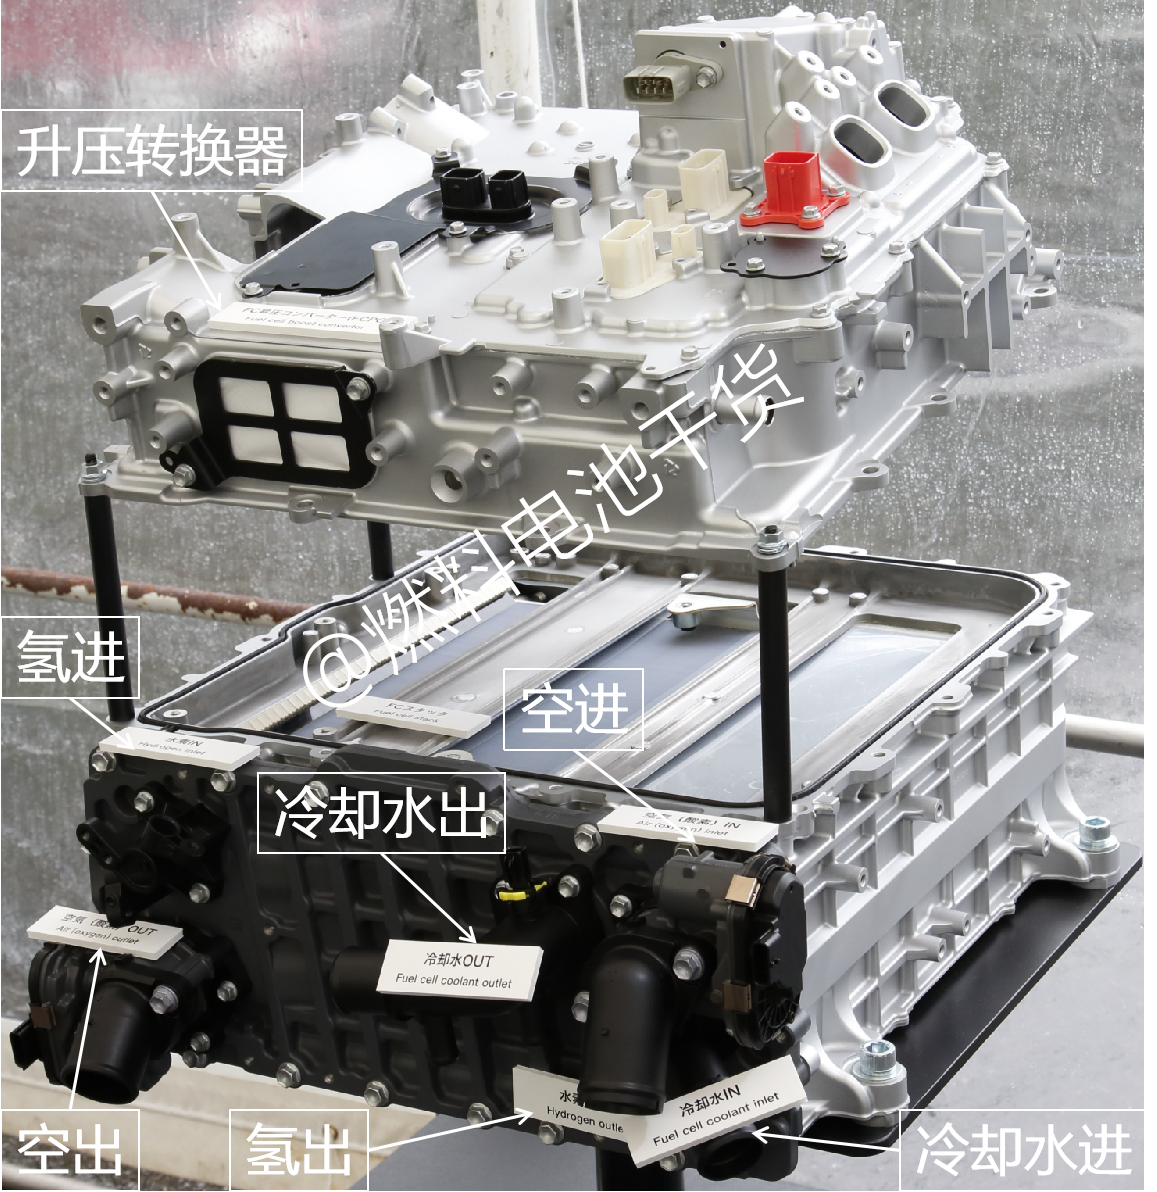 丰田第二代Mirai燃料电池结构解析